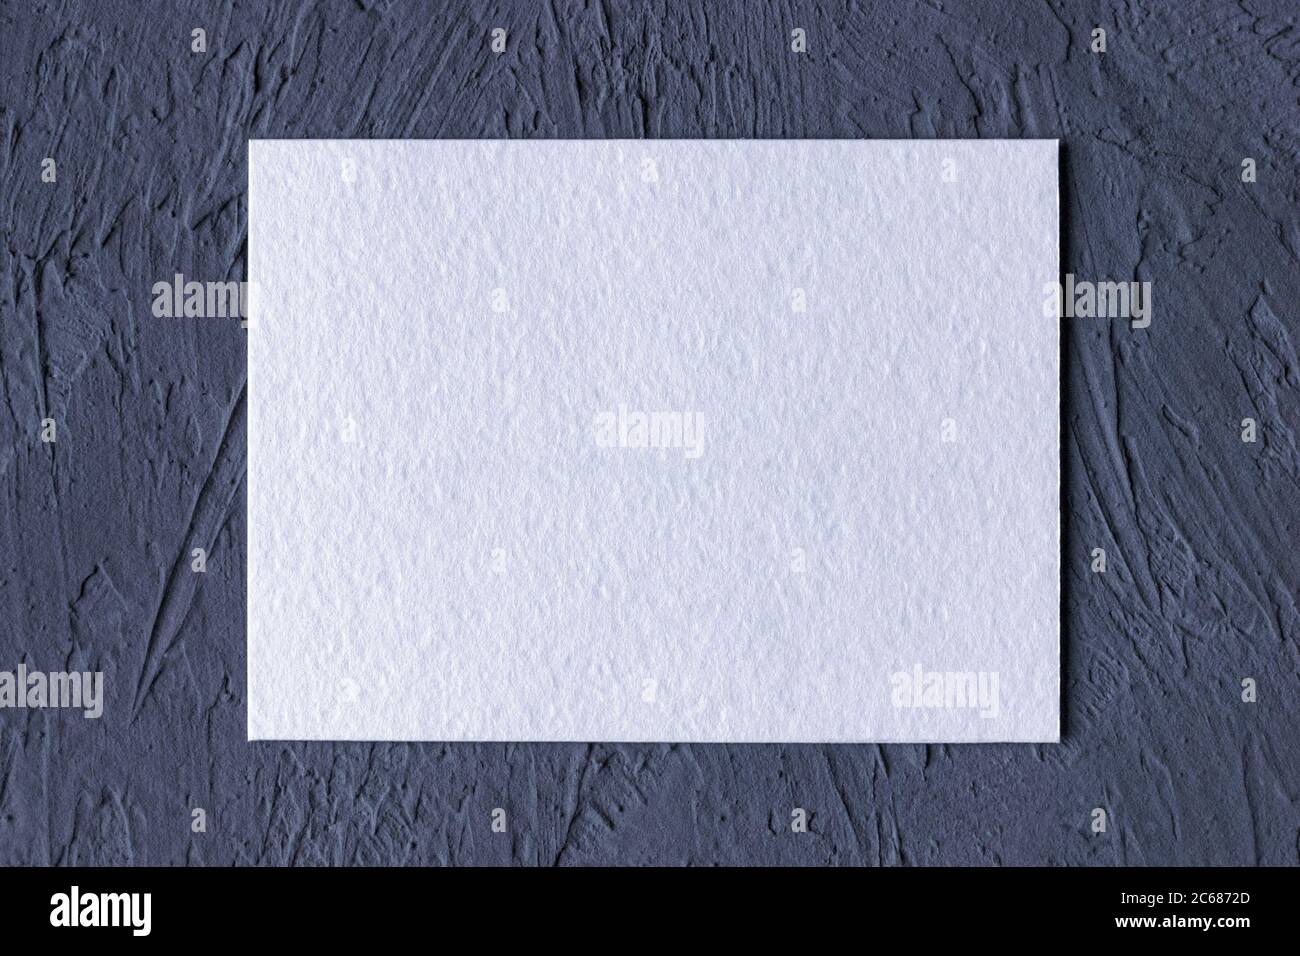 Weiße strukturierte Papierkarte auf dunkelgrauem einfarbigen Hintergrund Stockfoto